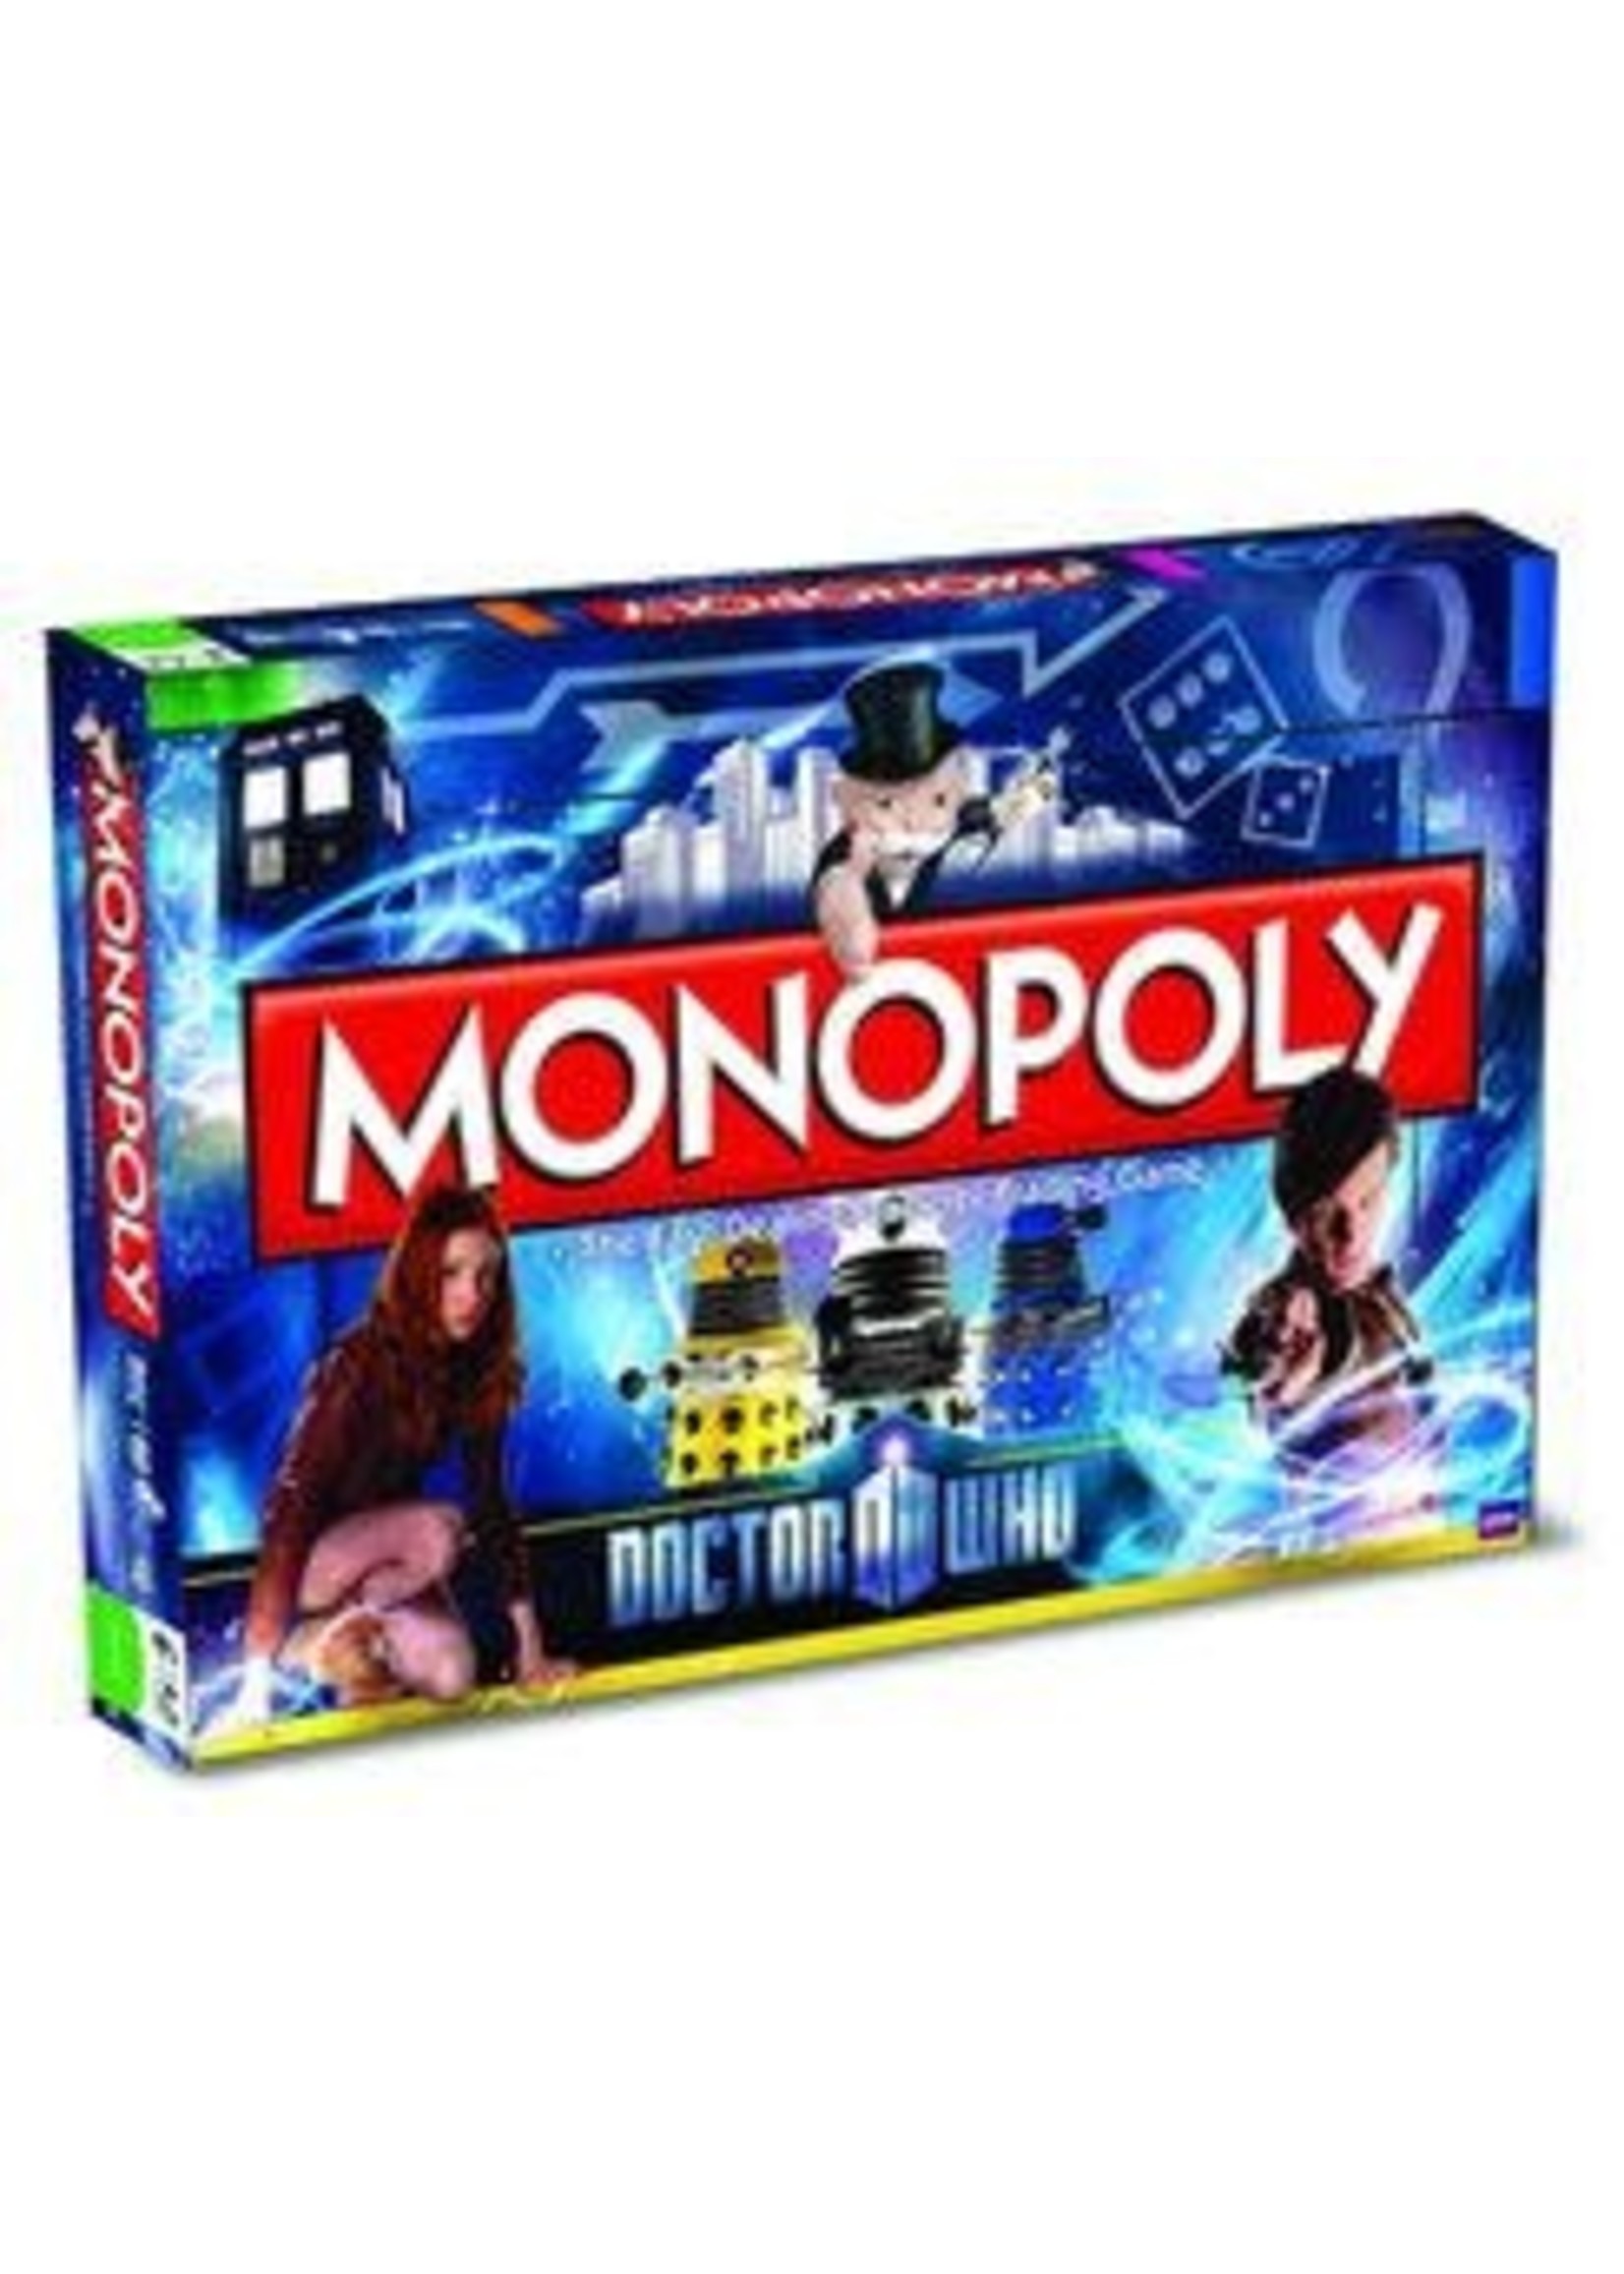 Rental RENTAL - Monopoly Dr Who 1 lb 14.9 oz